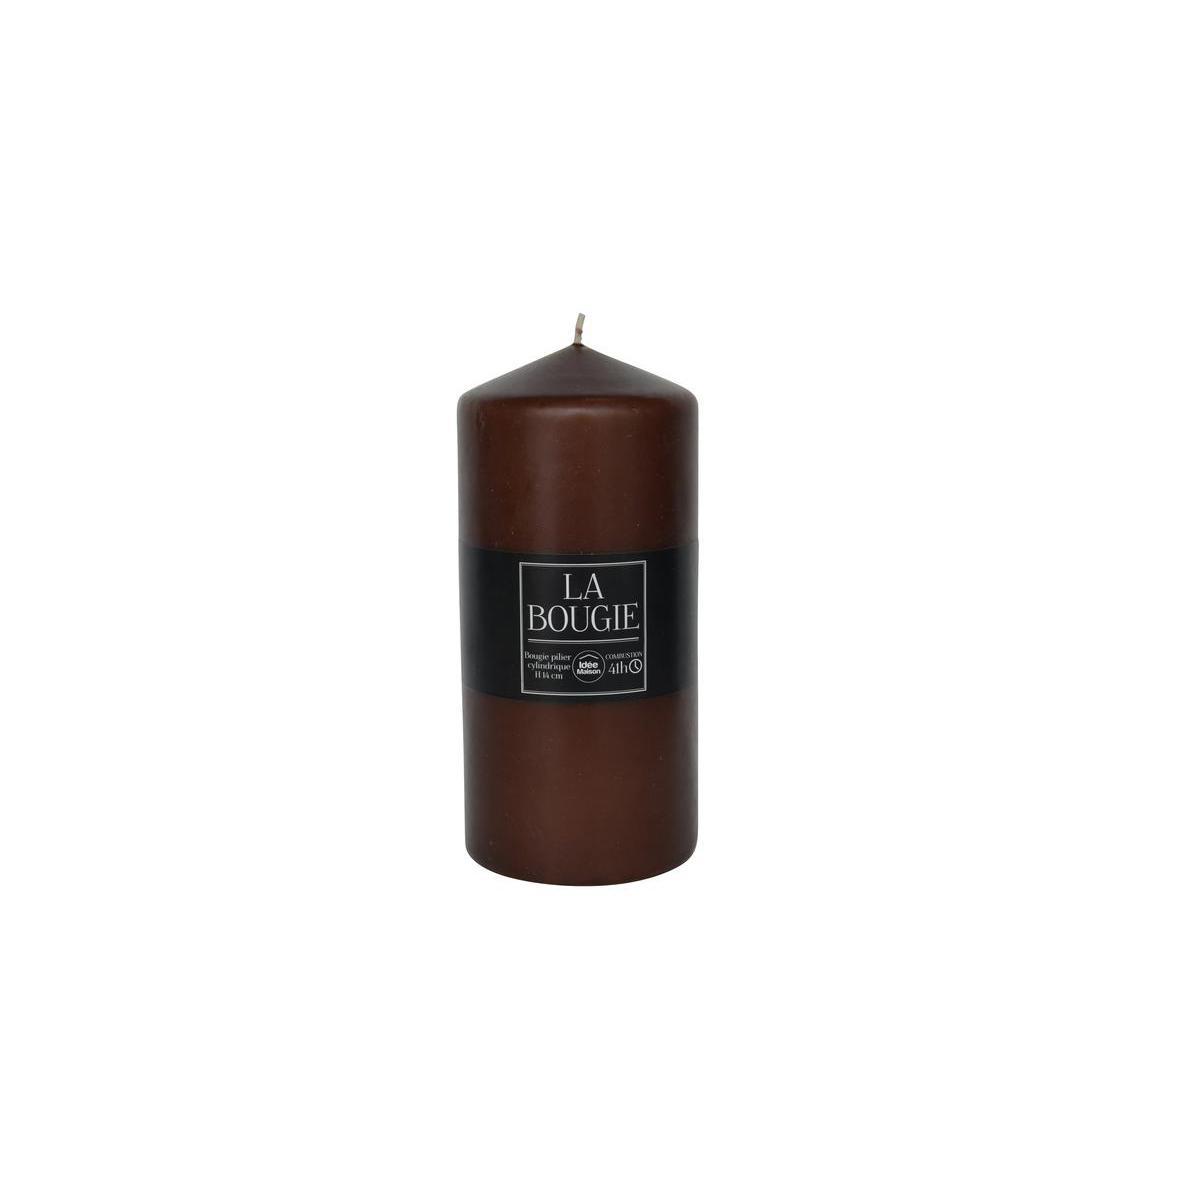 Bougie pilier cylindrique en paraffine - 6,8 x H 14 cm - Marron chocolat